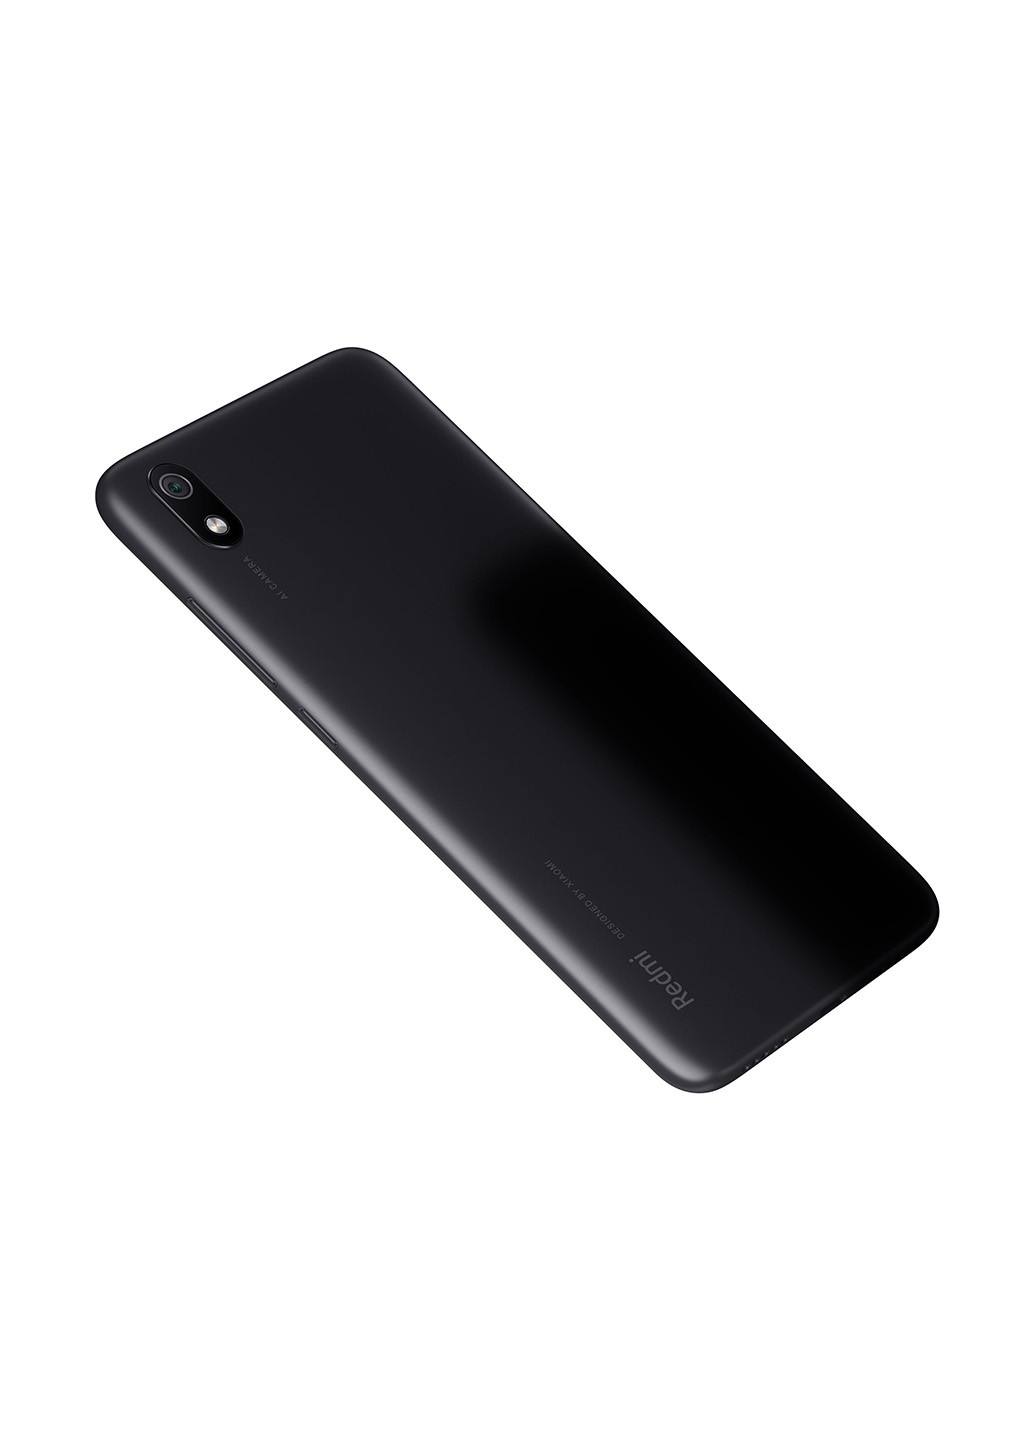 Смартфон Redmi 7A 2 / 16GB Matte Black Xiaomi redmi 7a 2/16gb matte black (135298050)